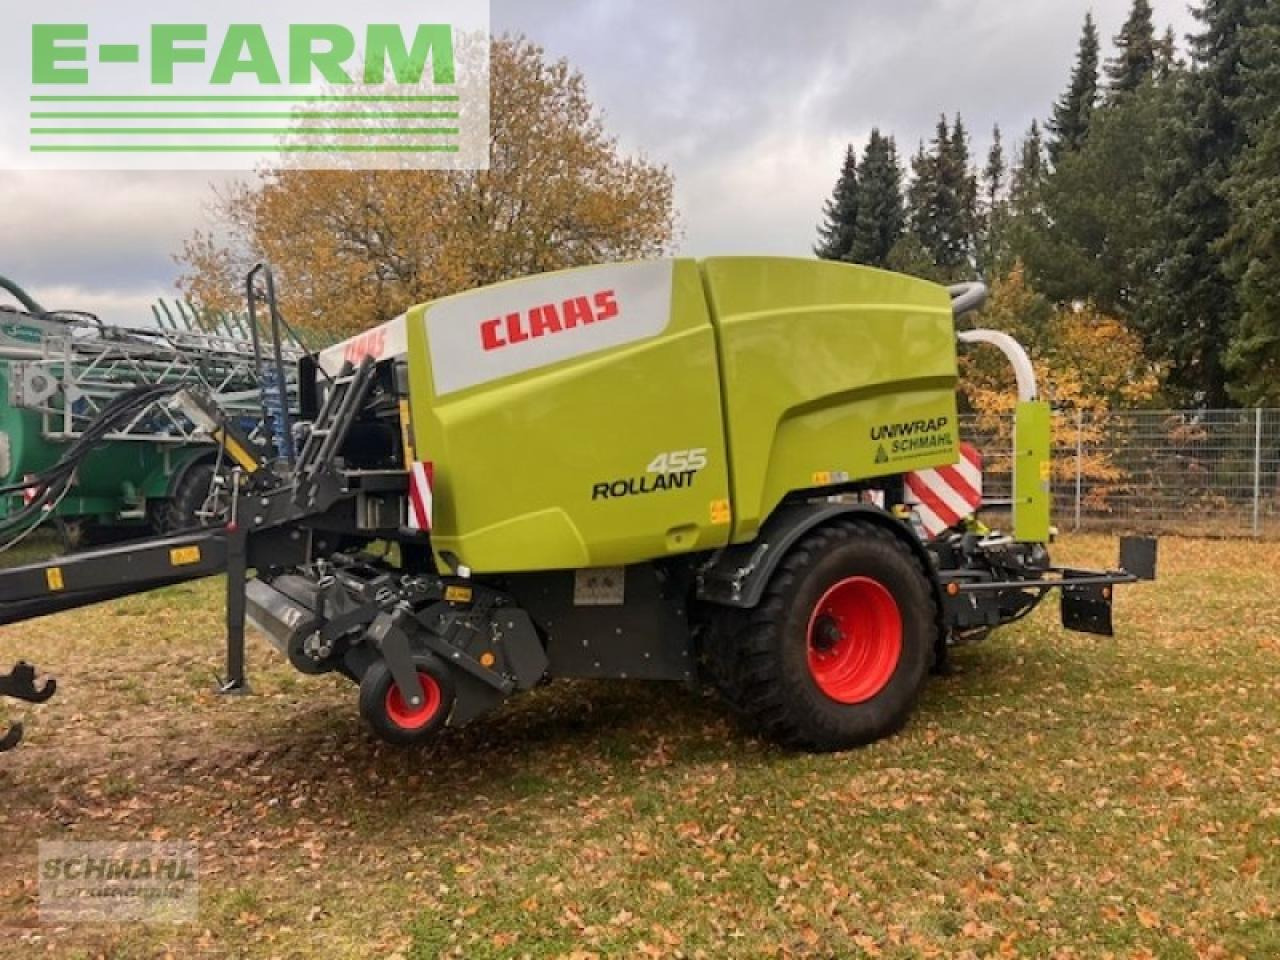 Farm tractor CLAAS rollant 455rc uniwra